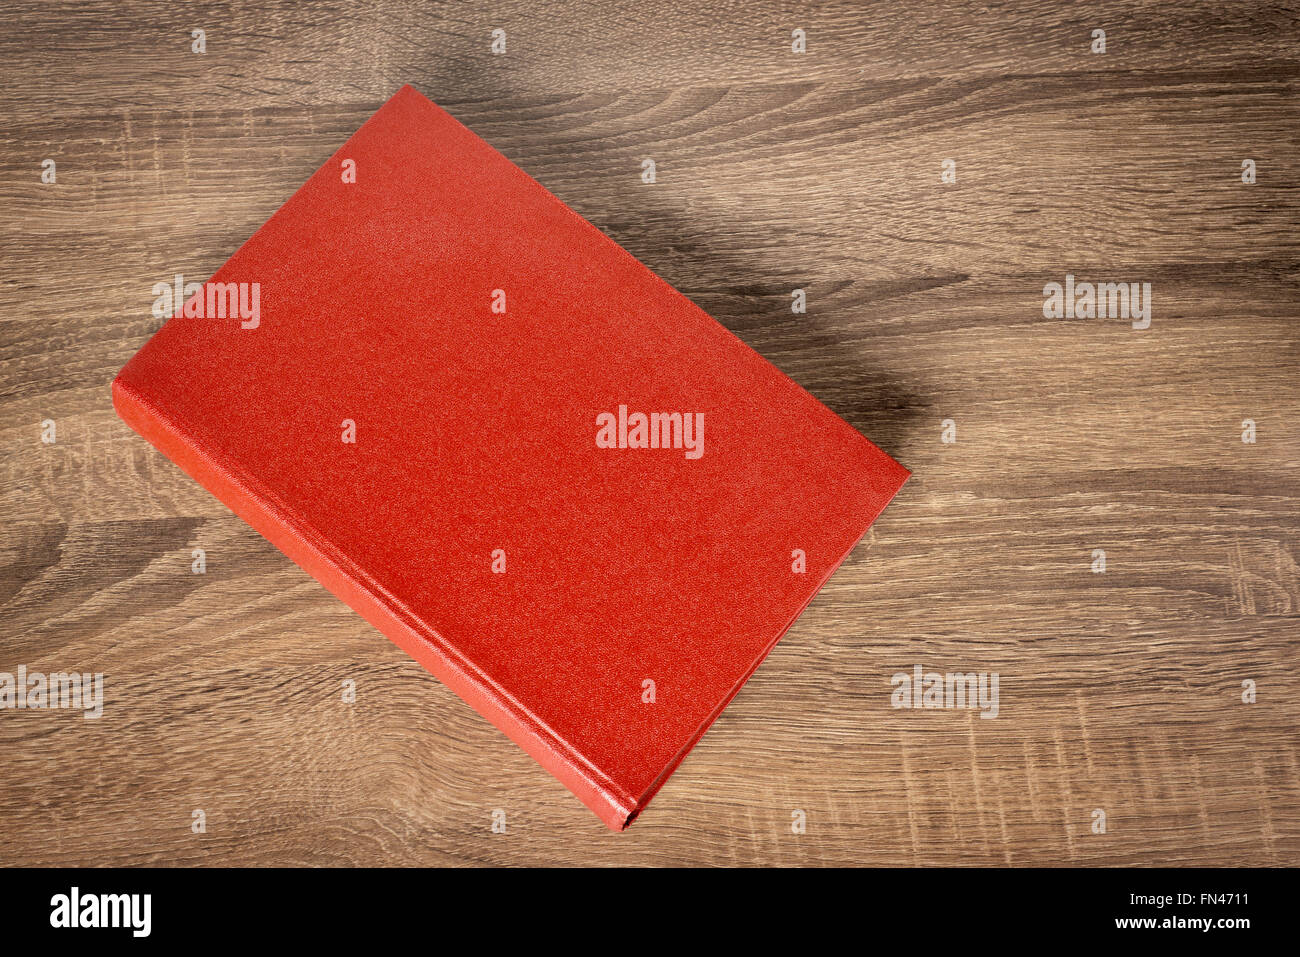 Rotes Buch auf dem Tisch Stockfoto